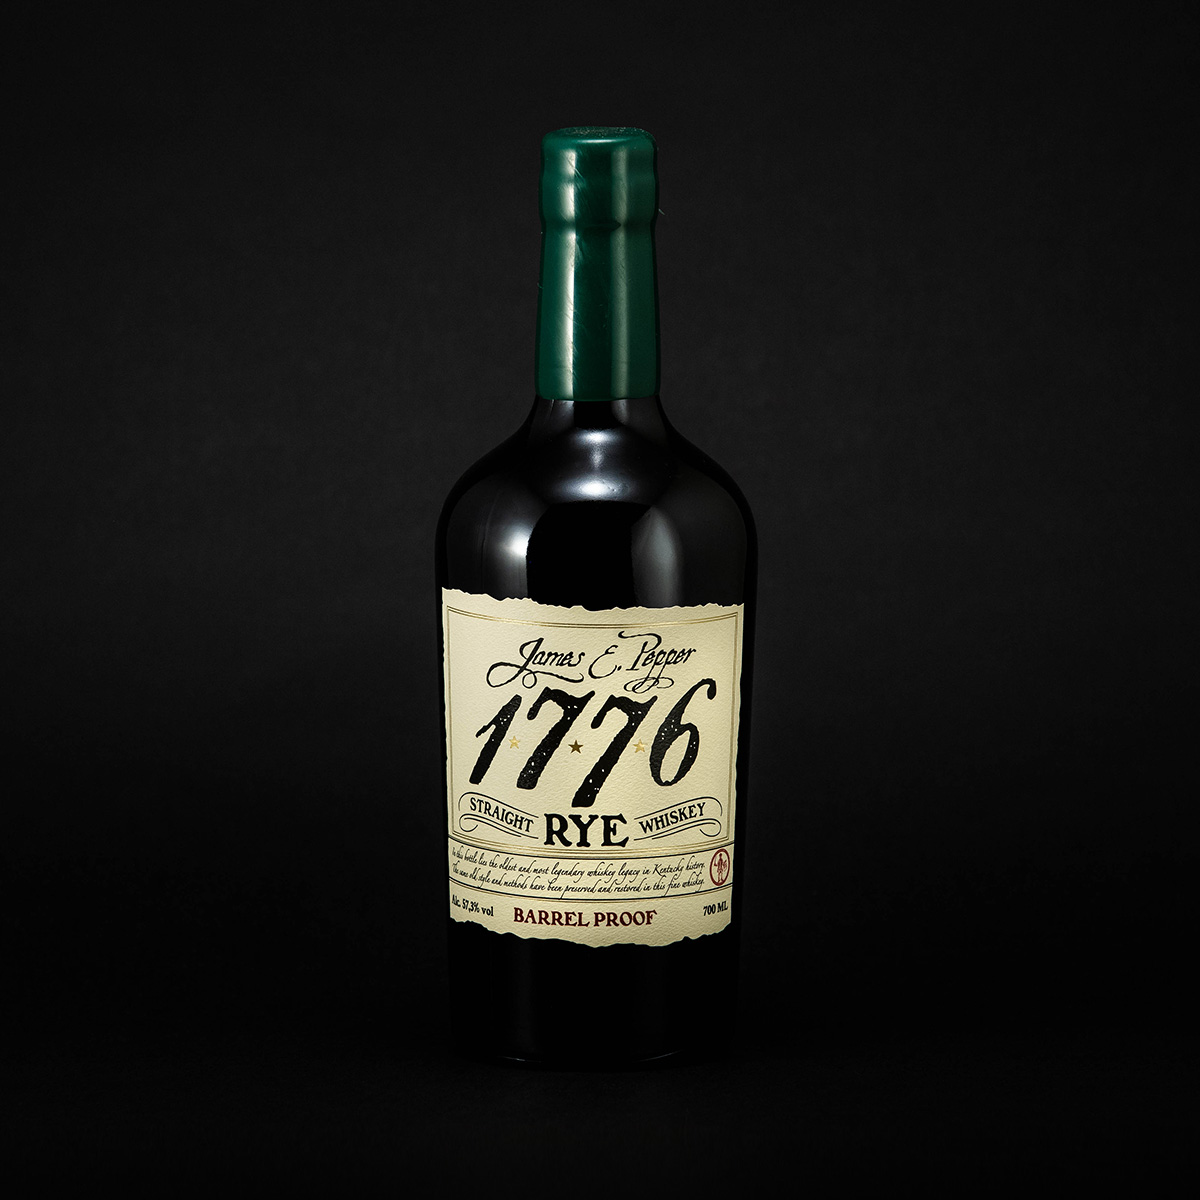 James & Pepper - - Cigars 1776 Whiskey - De Kelle Rye Straight